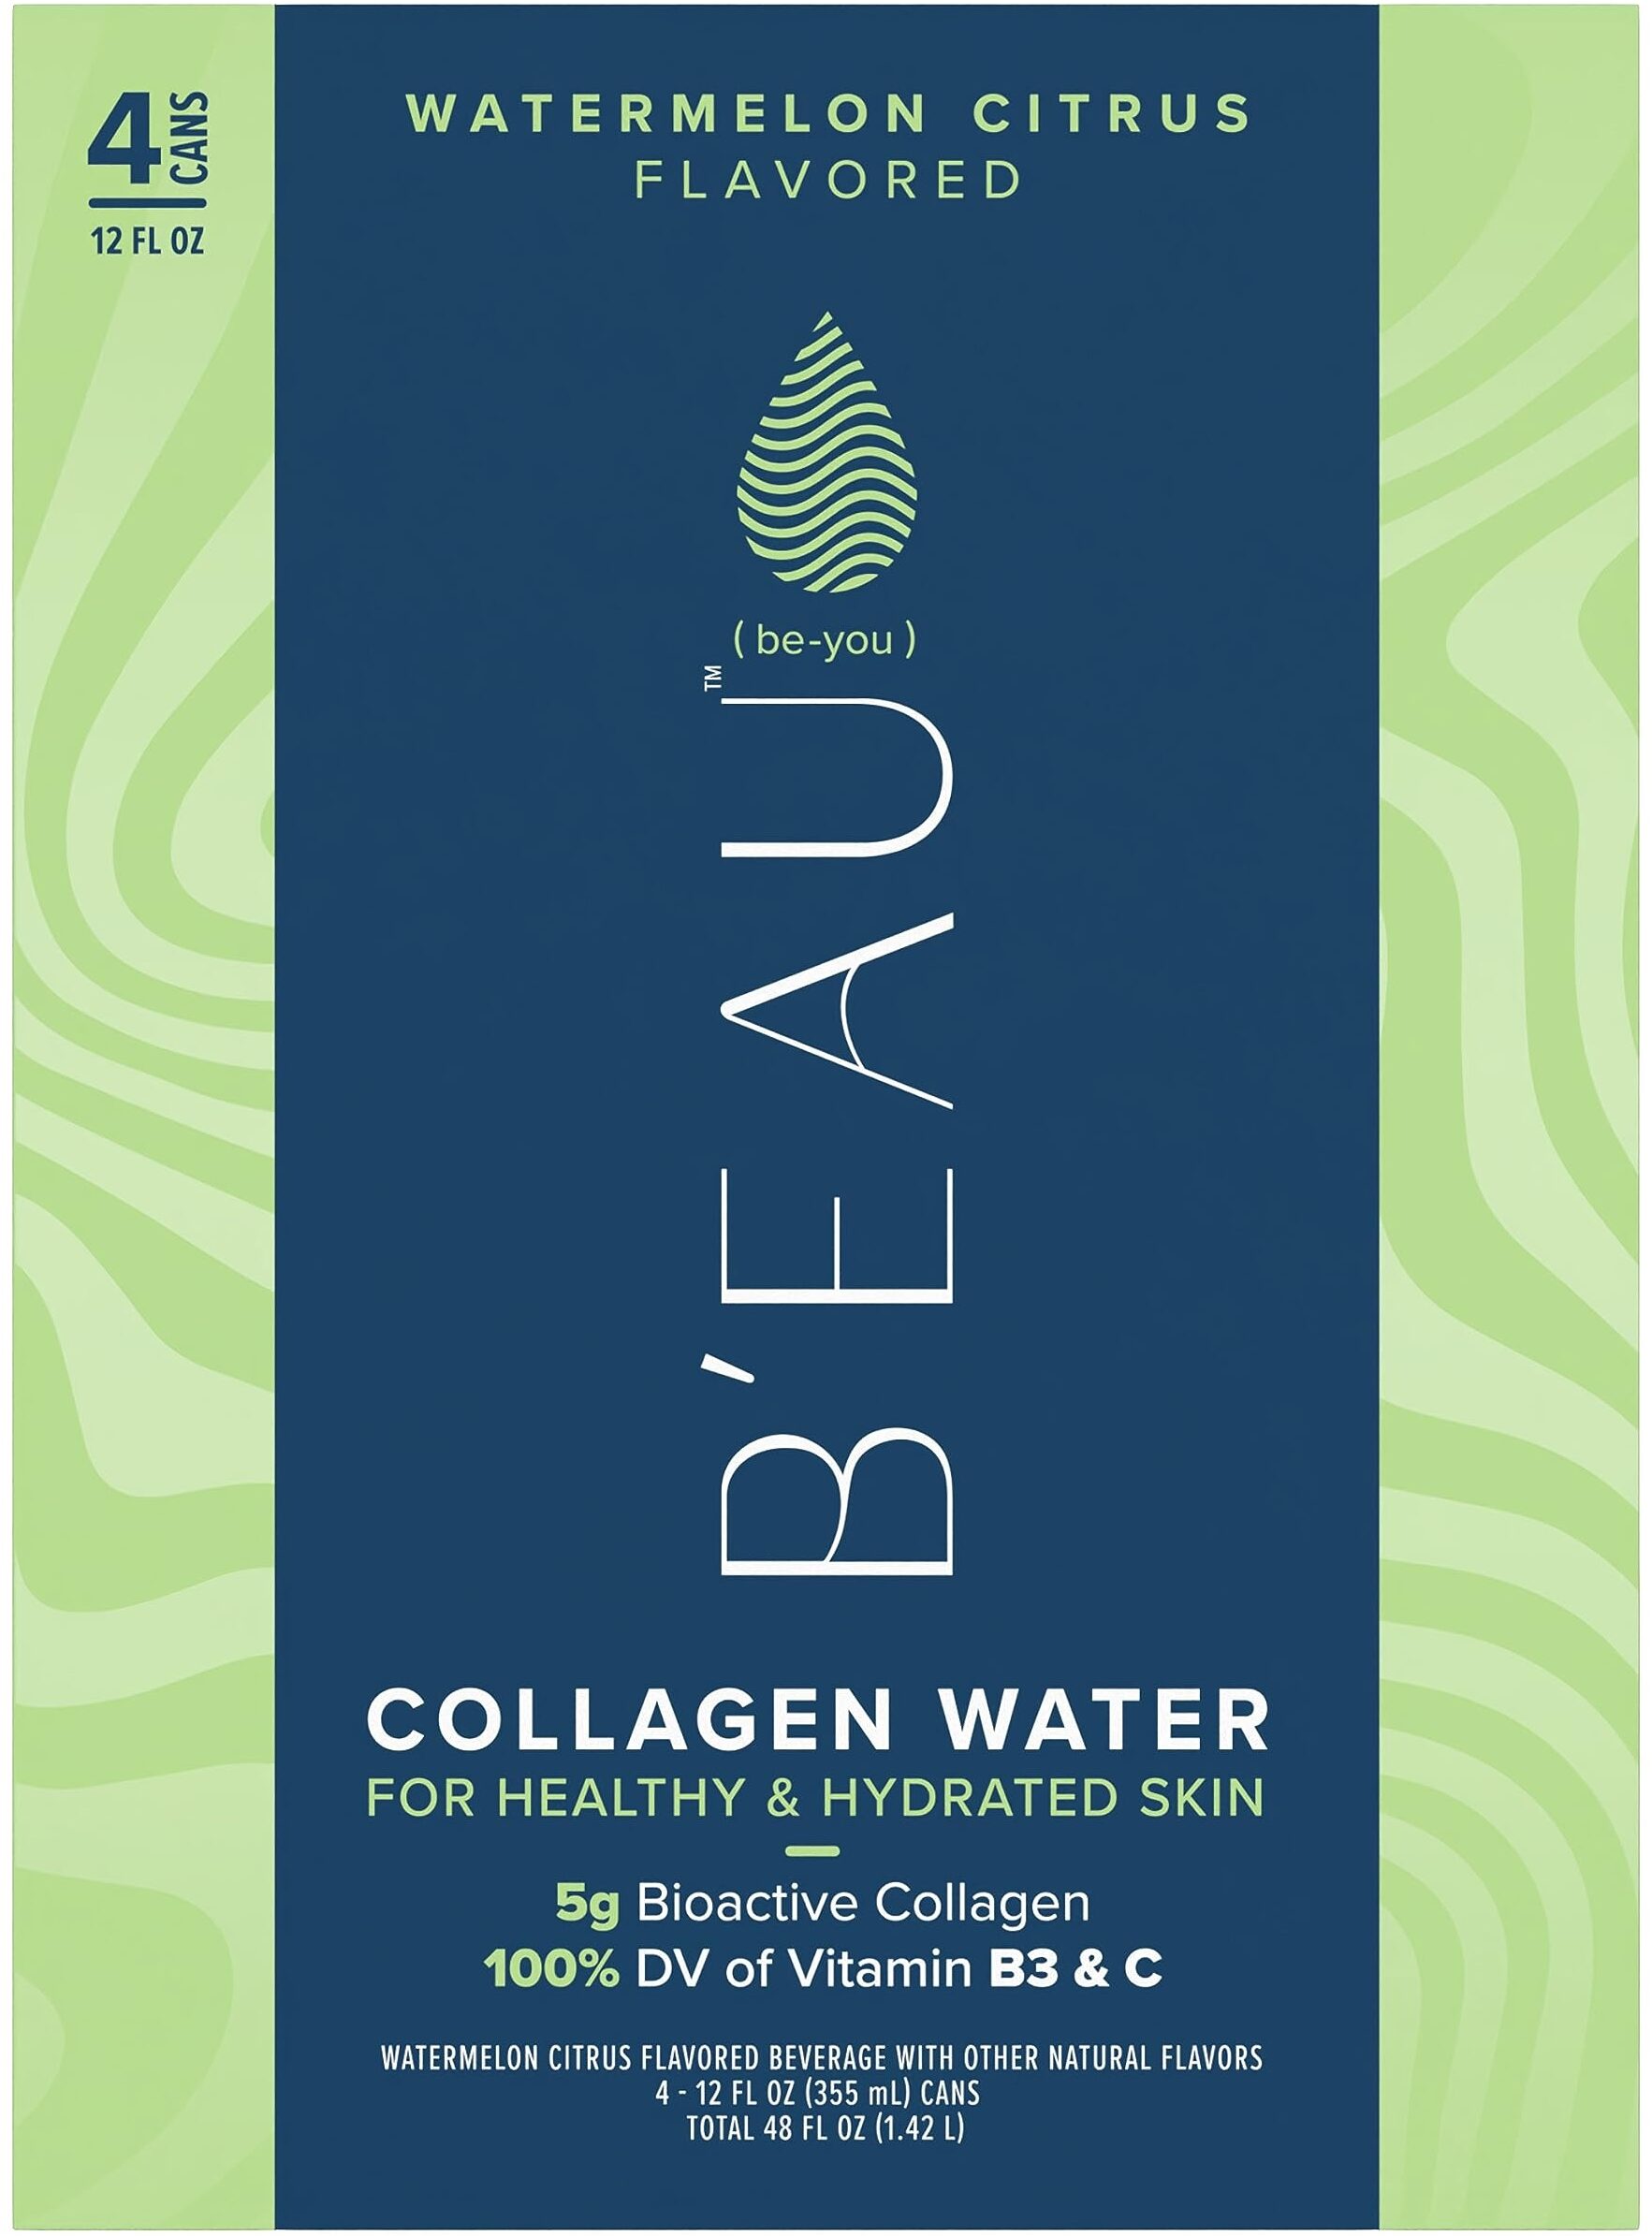 B'EAU Watermelon Citrus Collagen Water - Product - en